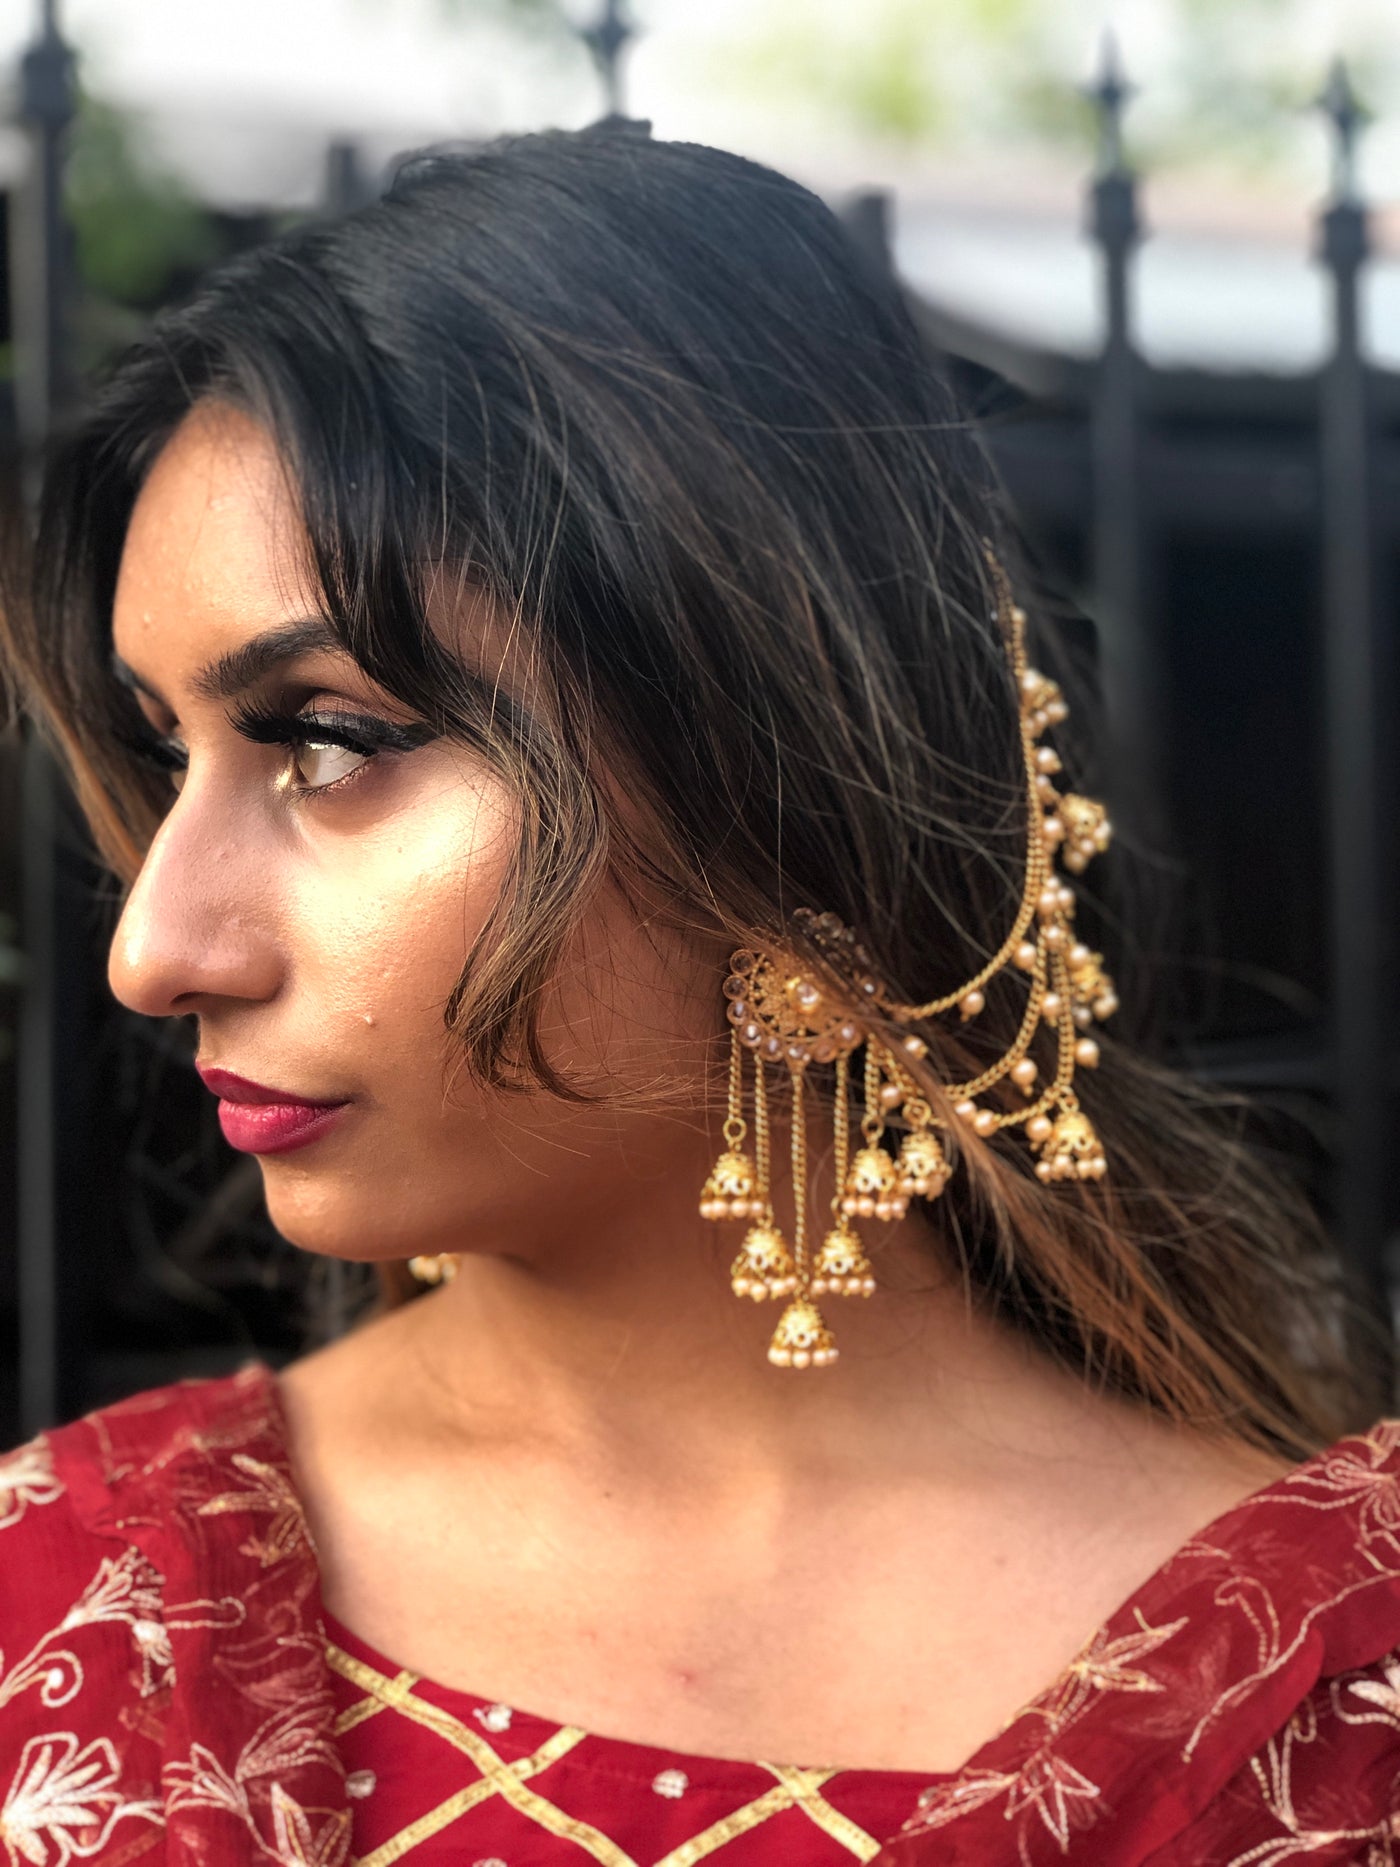 21 Chic  Trendy Bahubali Earring Designs for the Trendsetter Brides   WeddingBazaar